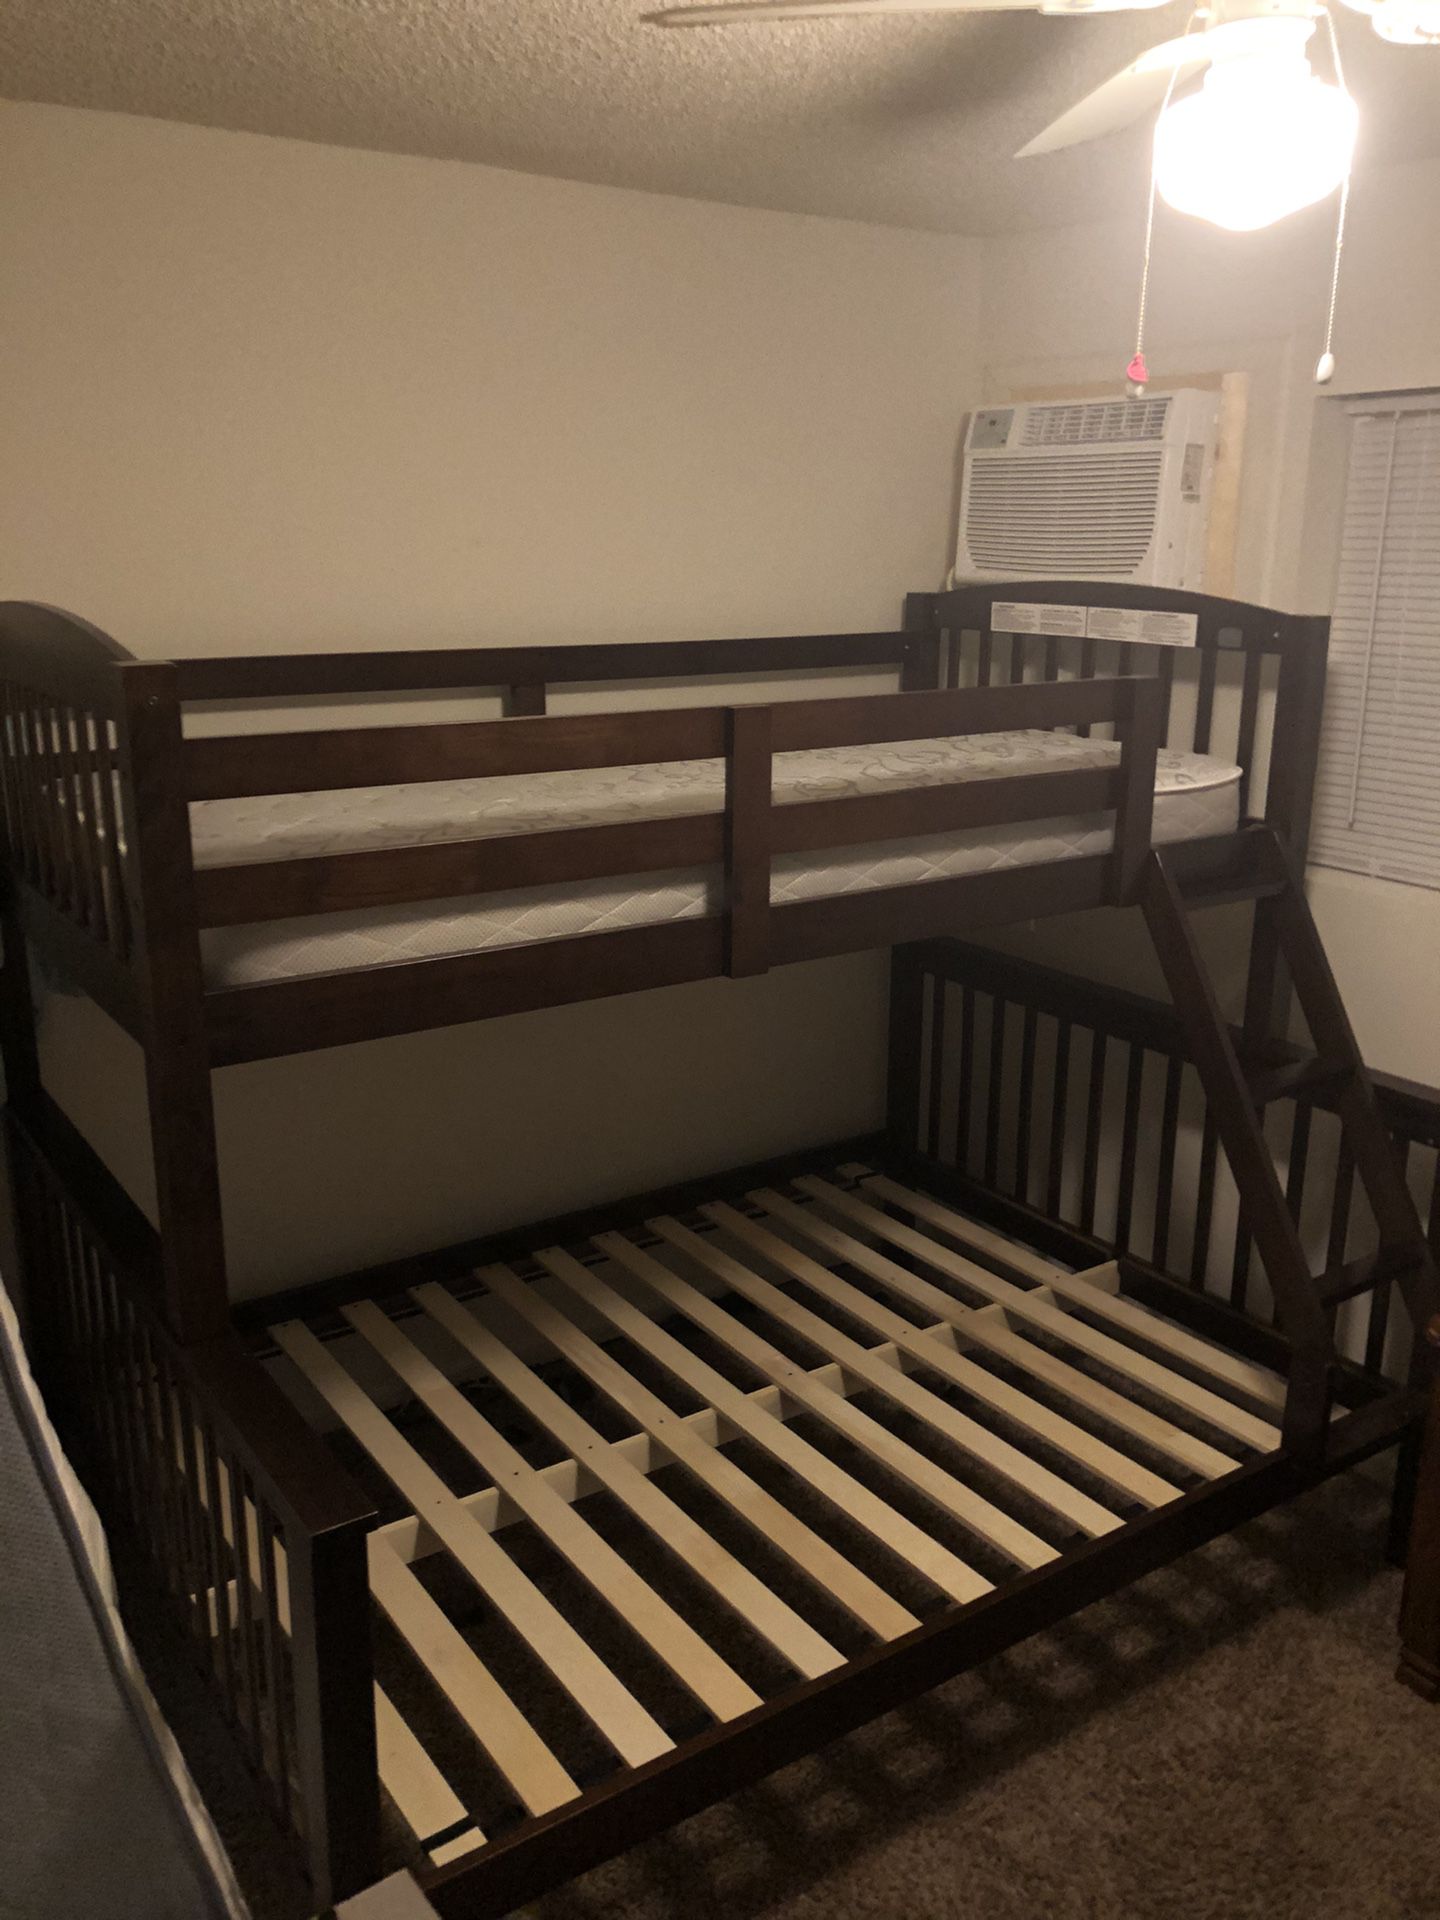 Dark wood bunk beds